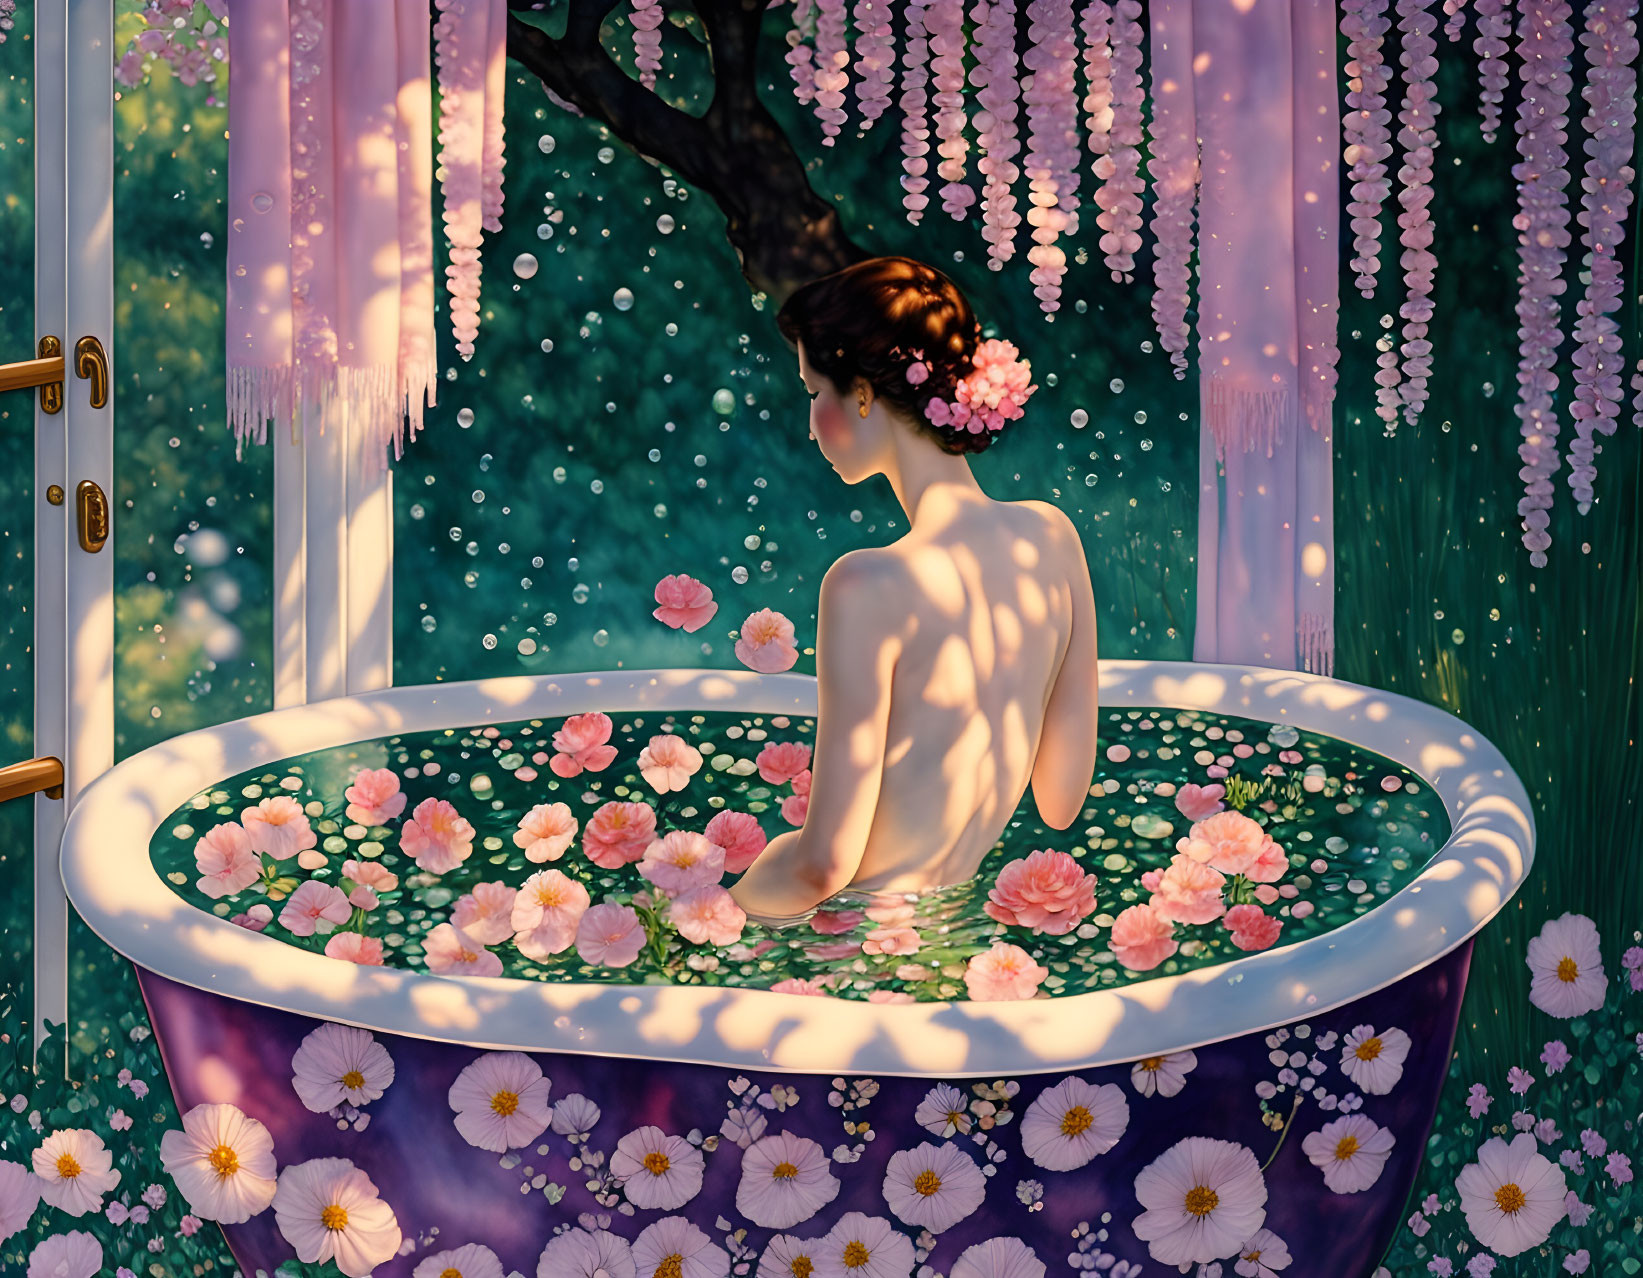 Fantasy Bath